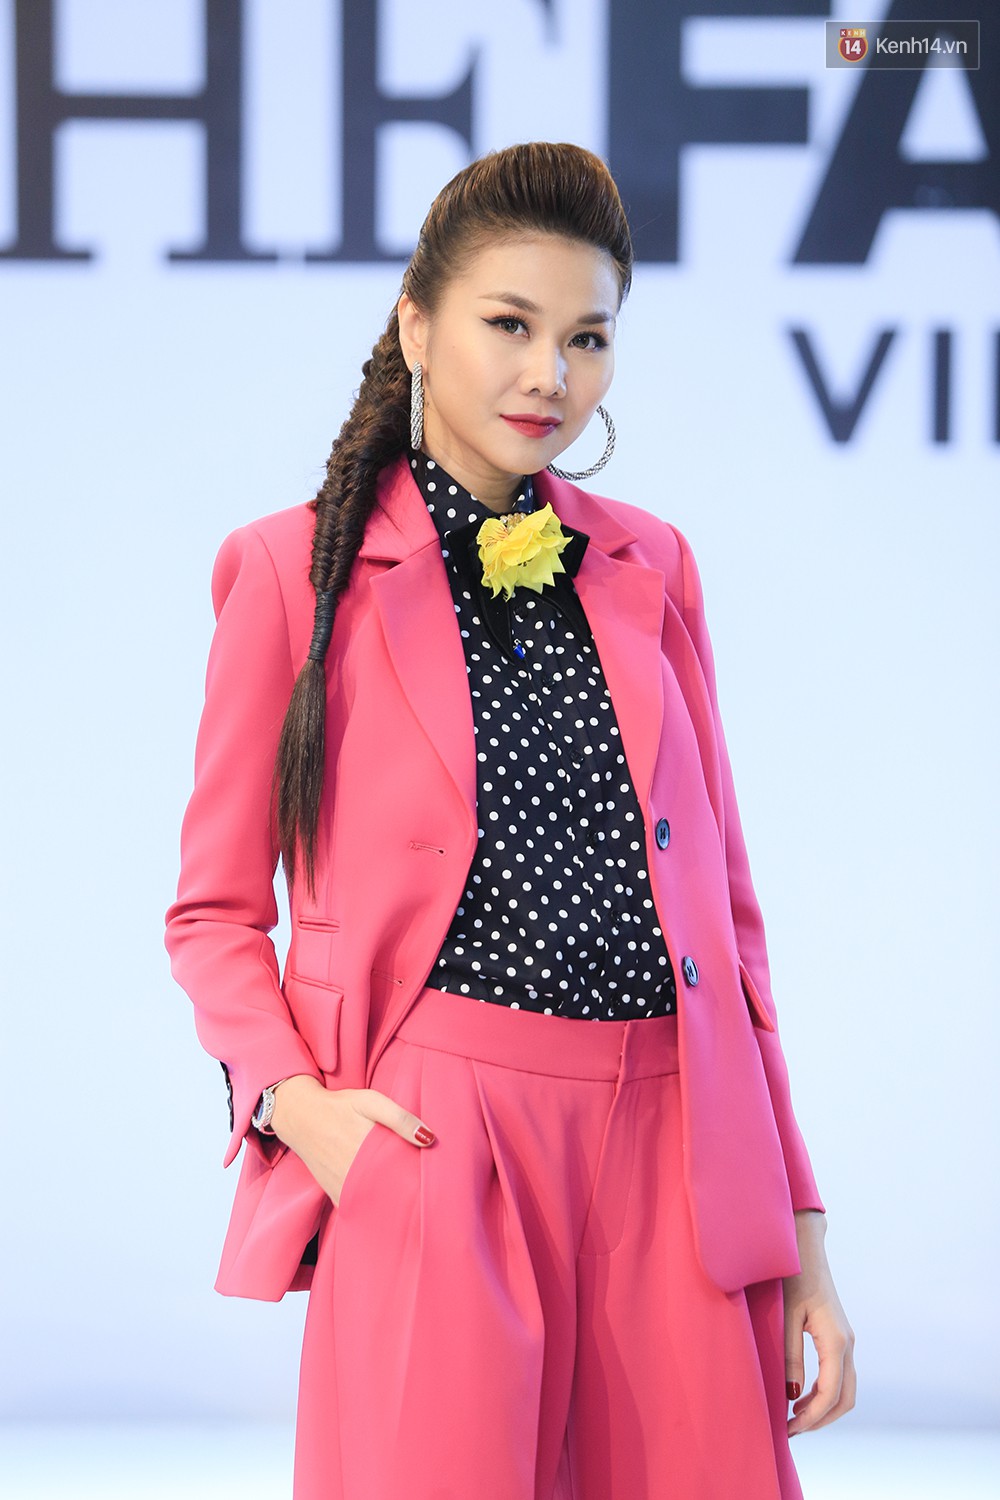 Thanh Hằng đeo đồng hồ 2 tỷ, Võ Hoàng Yến “ton sur ton” Nam Trung tại casting The Face ở Hà Nội - Ảnh 1.